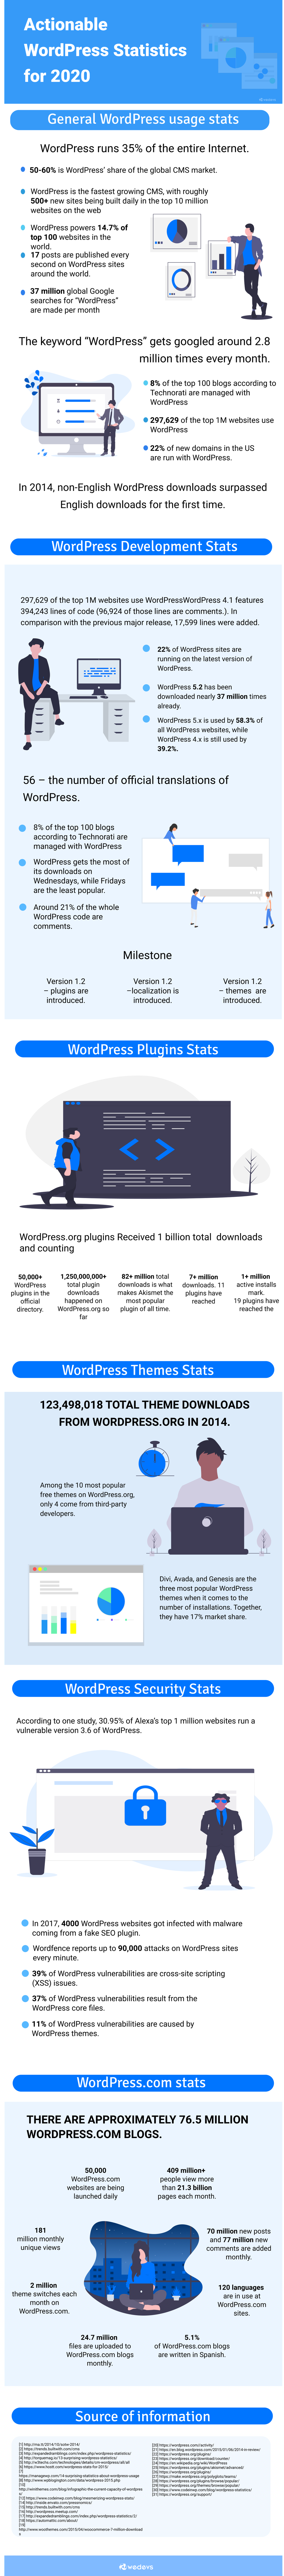 Recent actionable WordPress statistics